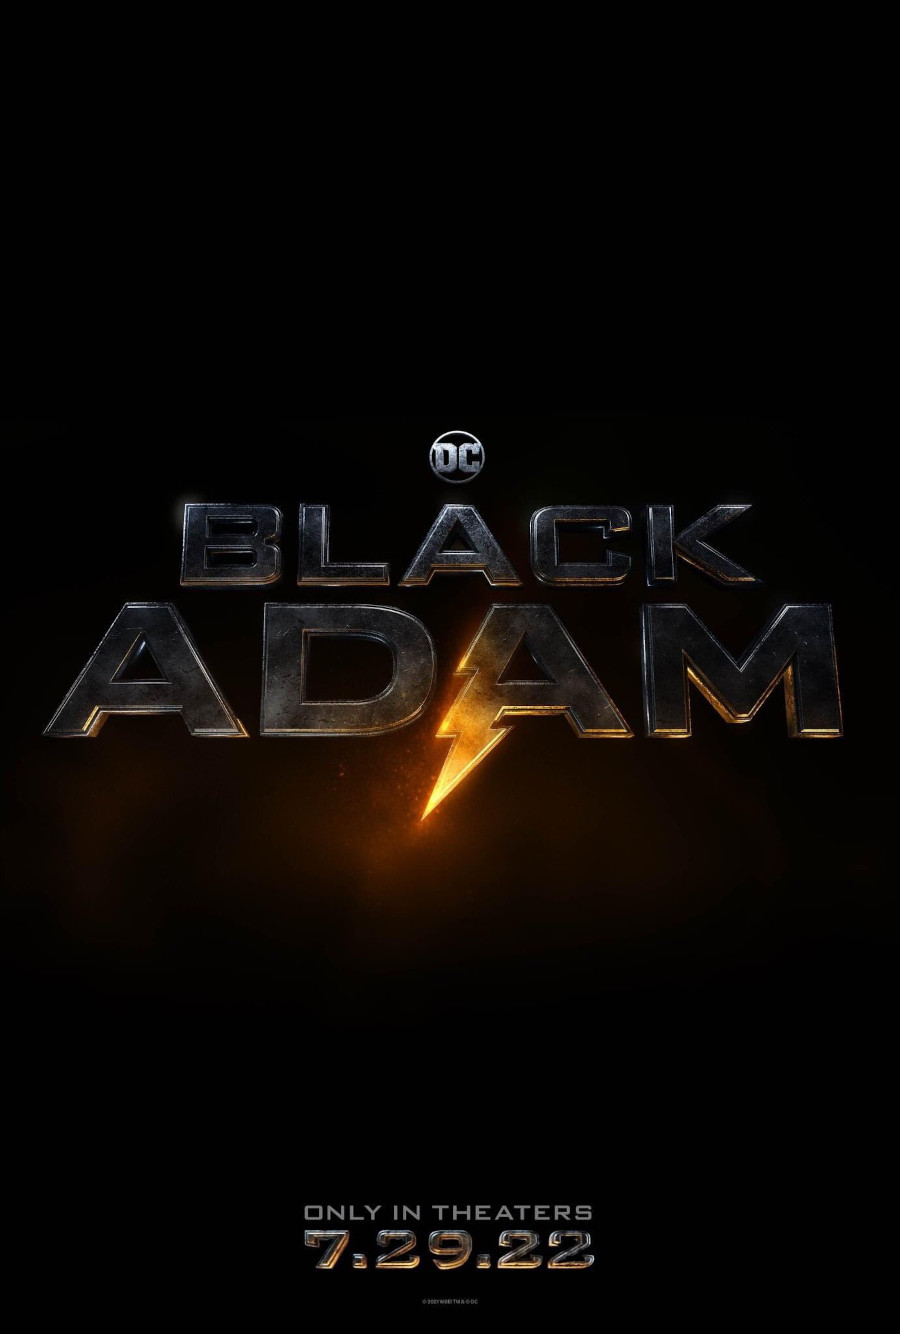 Black Adam release date poster